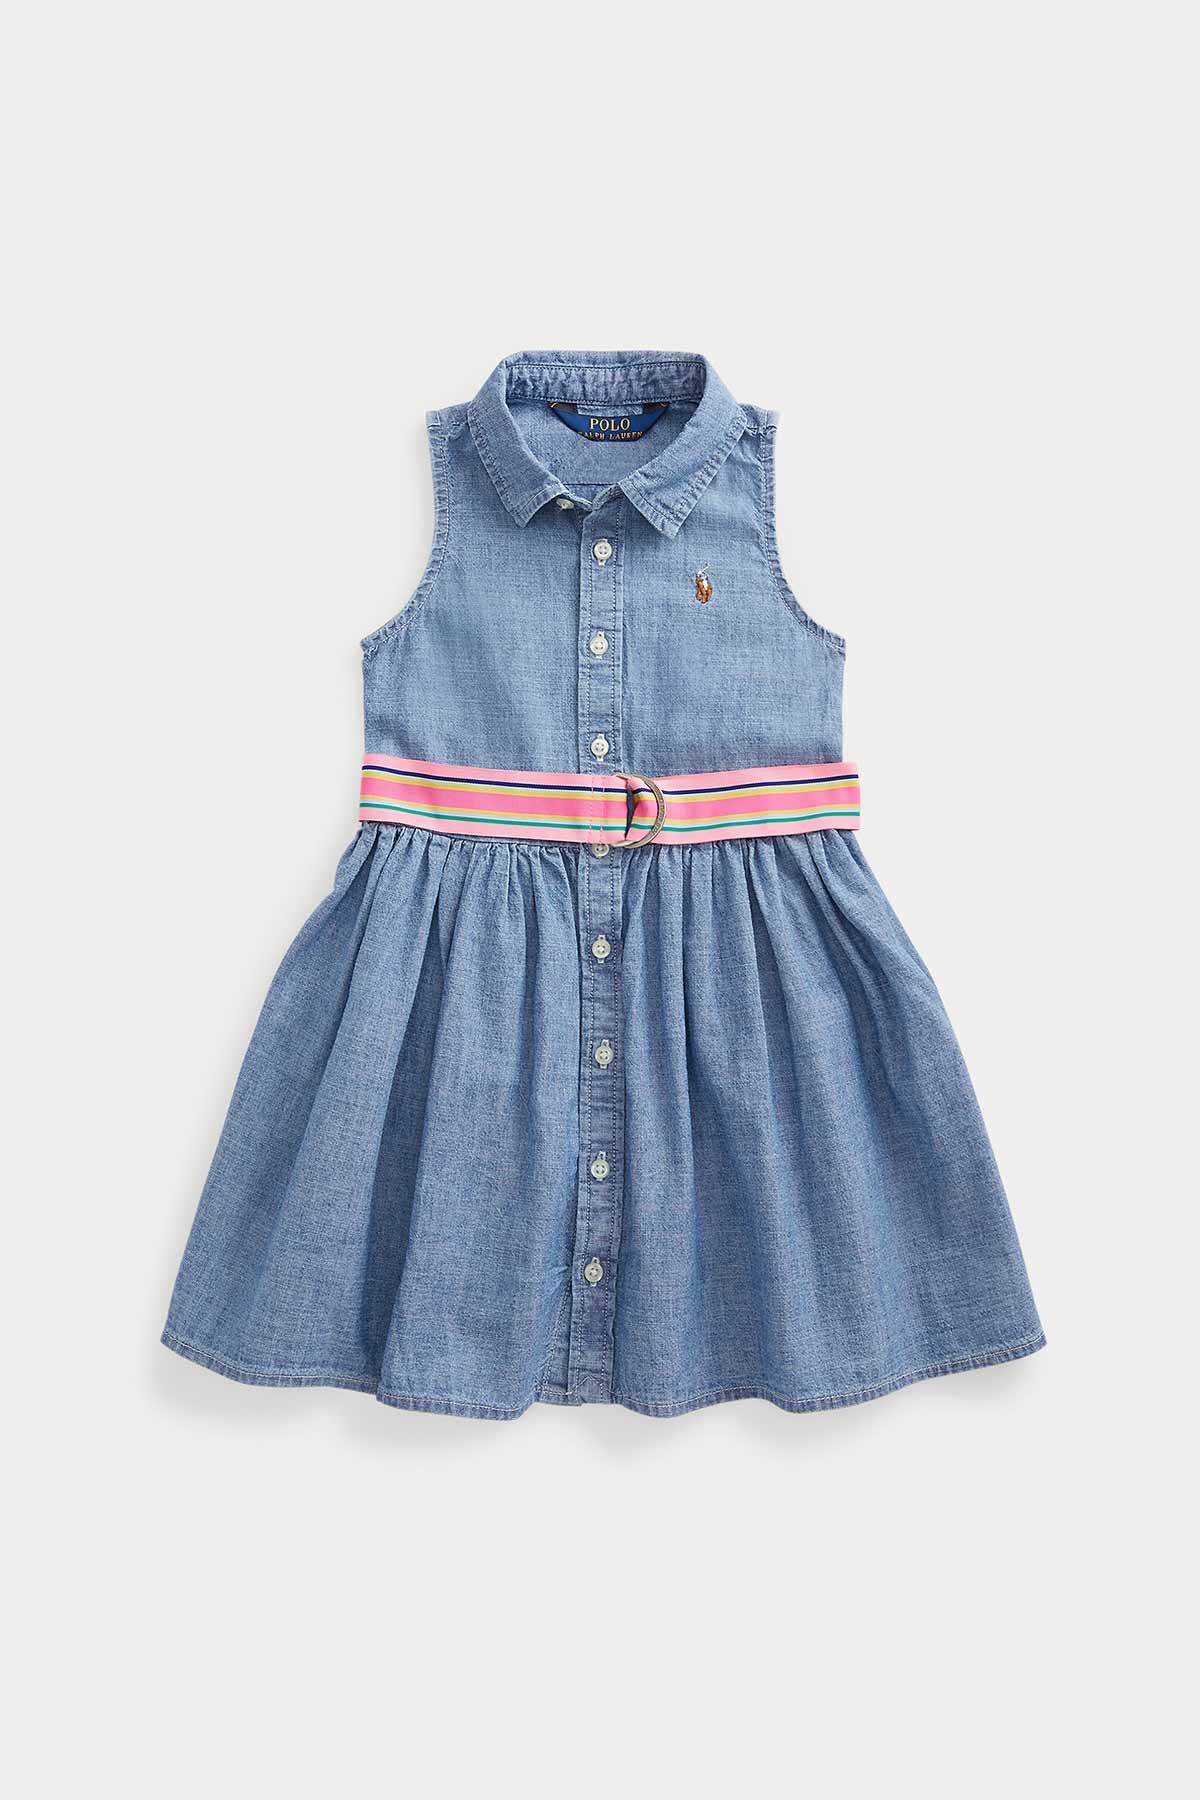 Polo Ralph Lauren 2-4 Yaş Kız Çocuk Kemerli Denim Gömlek Elbise-Libas Trendy Fashion Store